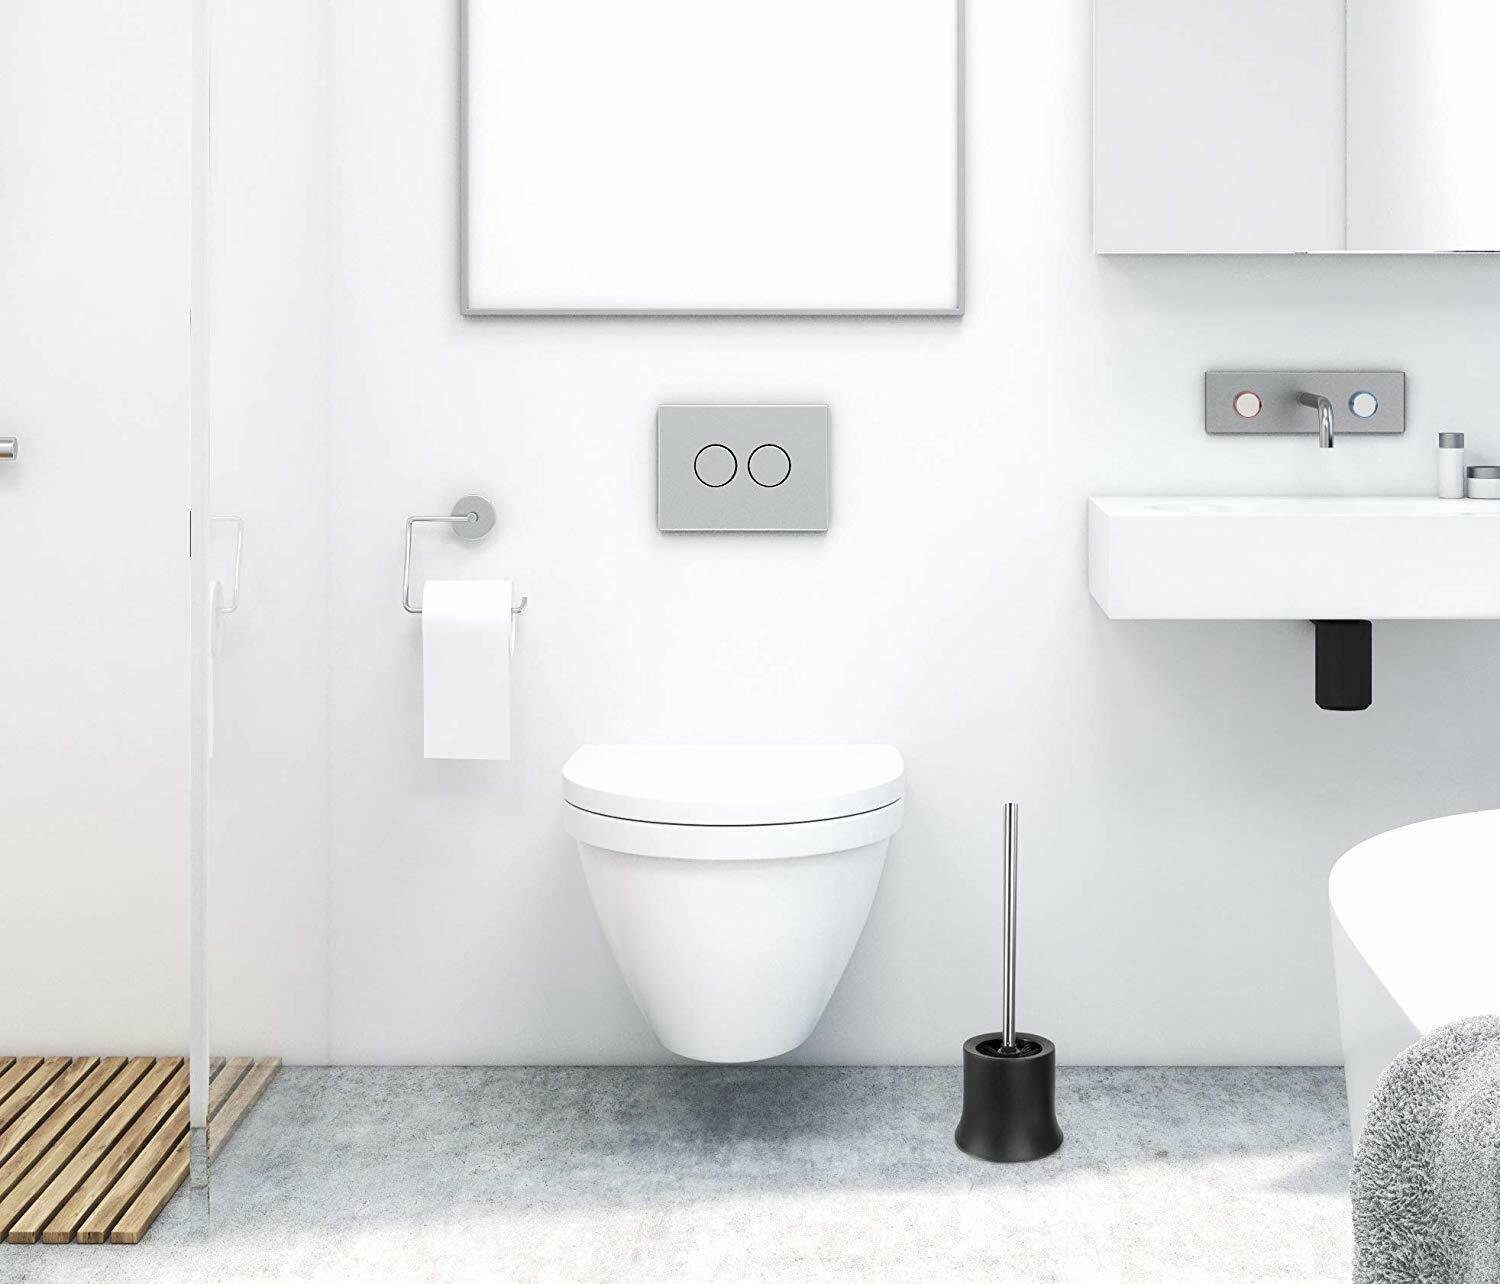 ROXUS WC-Reinigungsbürste WC-Garnitur freistehend, Toilettenbürsten Set, WC-Reinigungsbürsten, Badezimmer anthrazit jedes